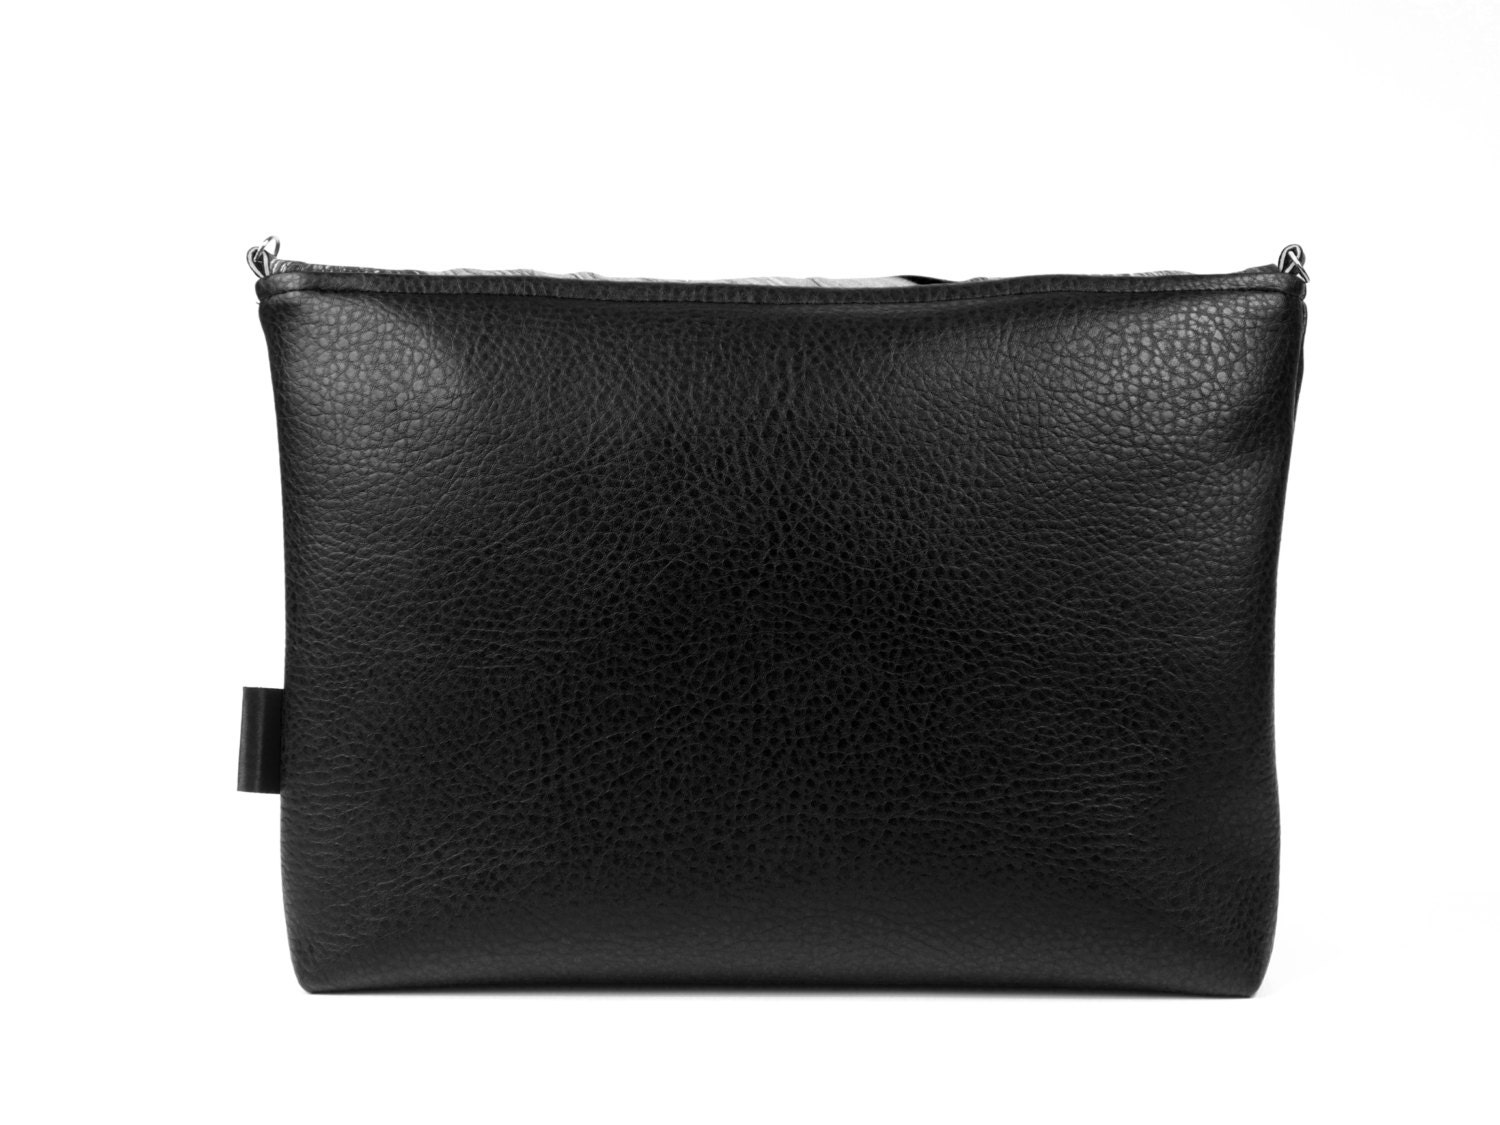 Crossbody Minimalist Bag Womens Purse Leather Purse Clutch | Etsy